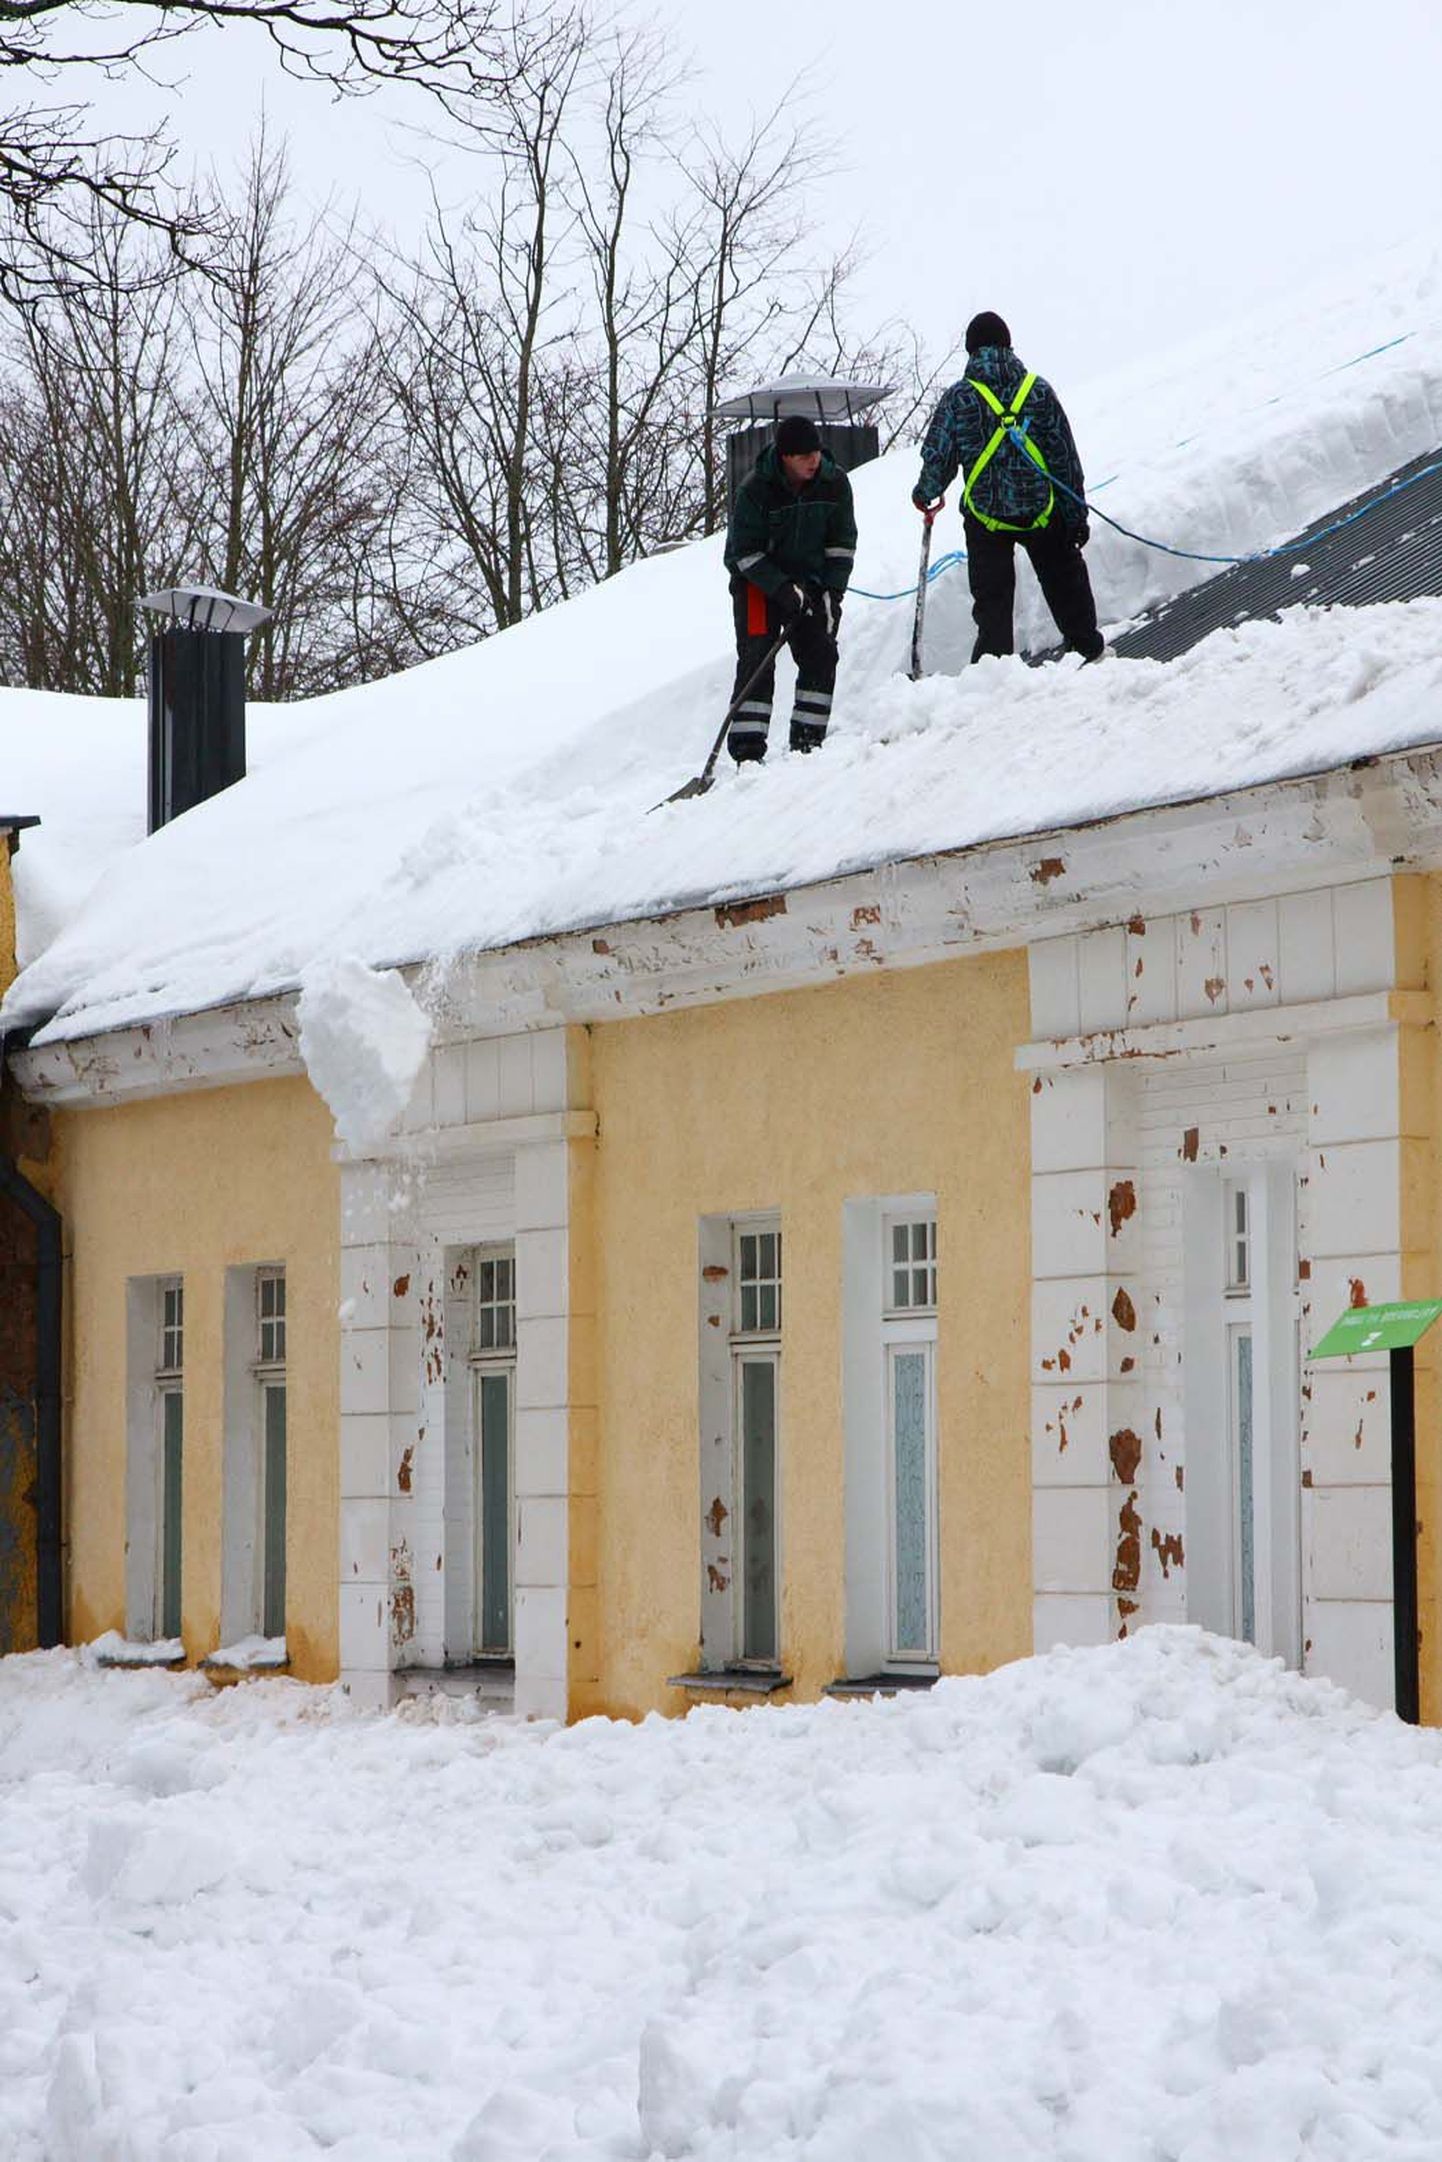 Liigne lumekoormus ohustab kõige enam teras- ja puitkonstruktsioonidega kergehitisi. Foto on illustreeriv.